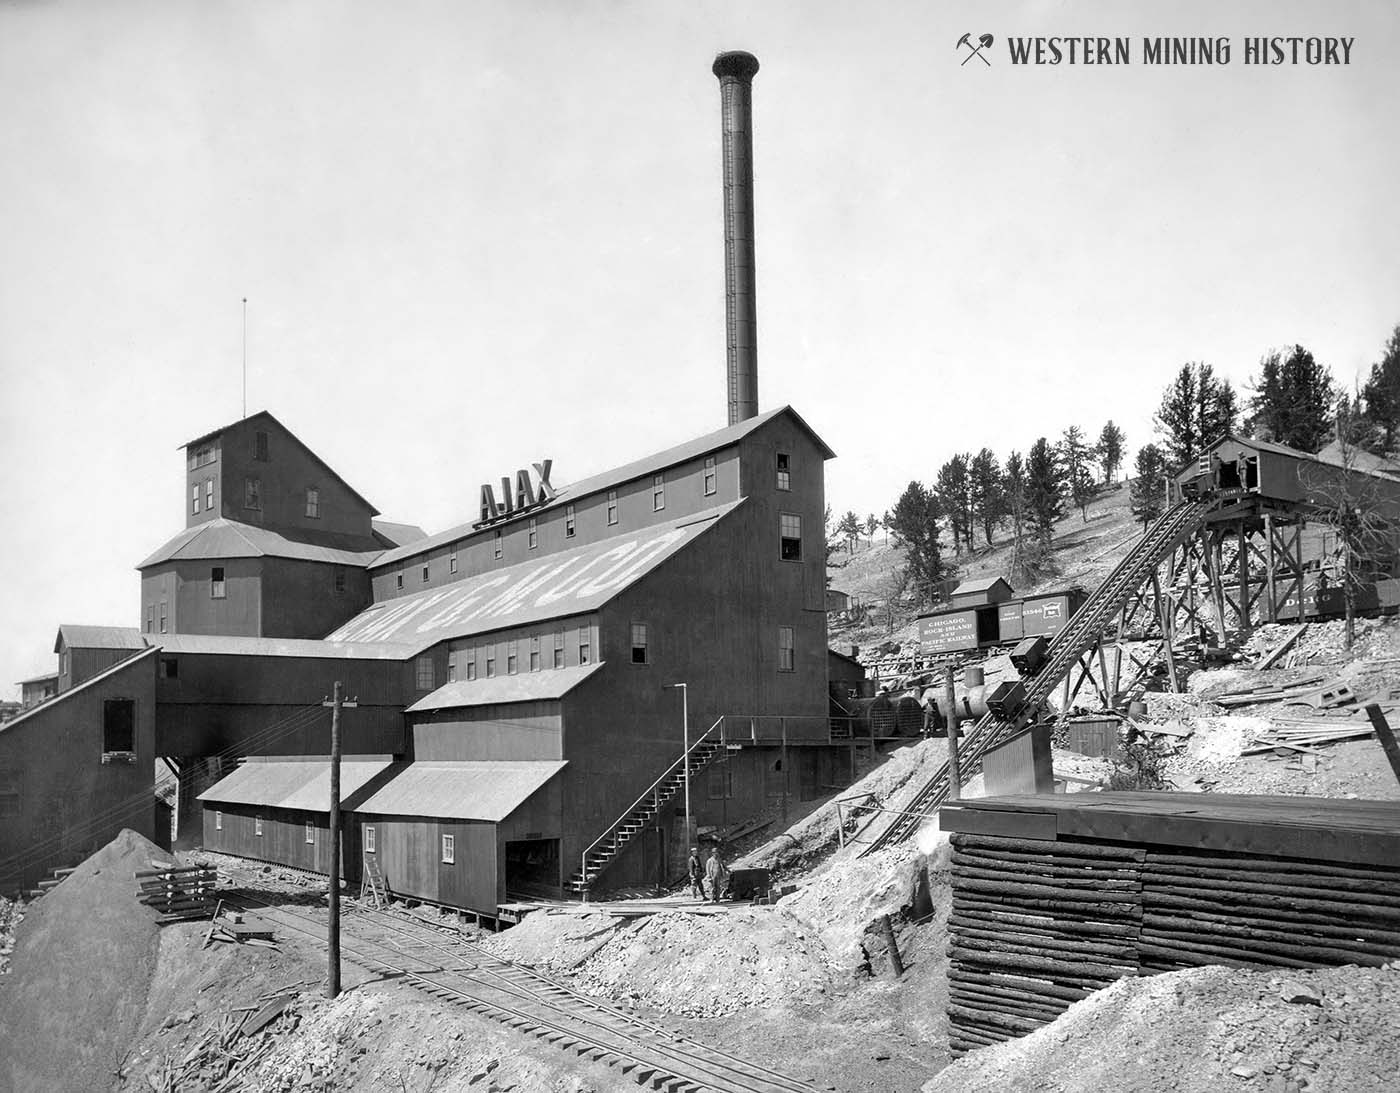 Ajax Mine at Victor, Colorado ca. 1905